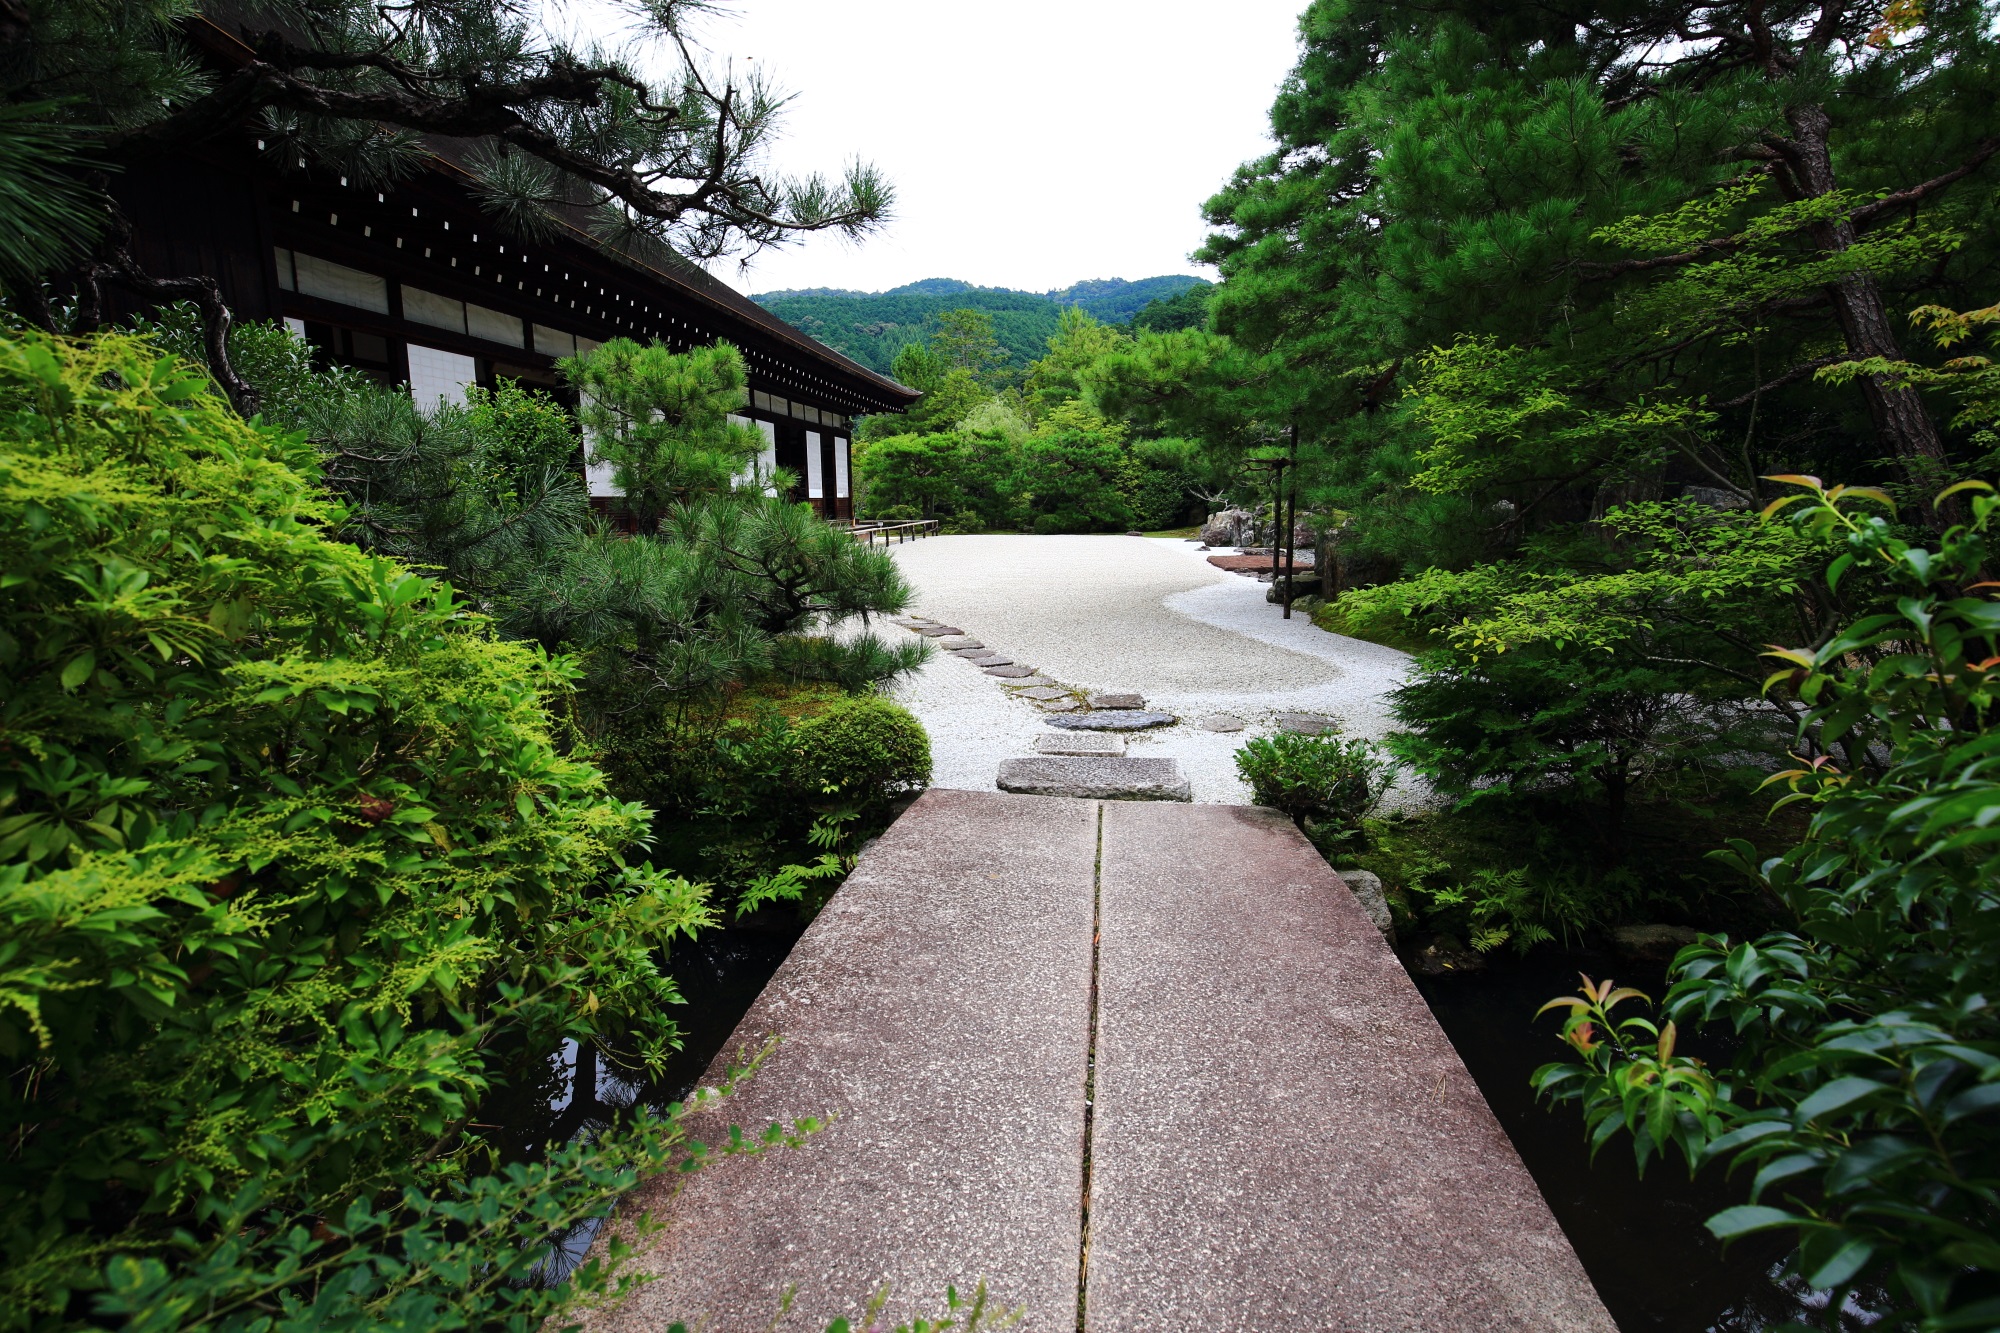 南禅寺塔頭の金地院の鶴亀の庭園